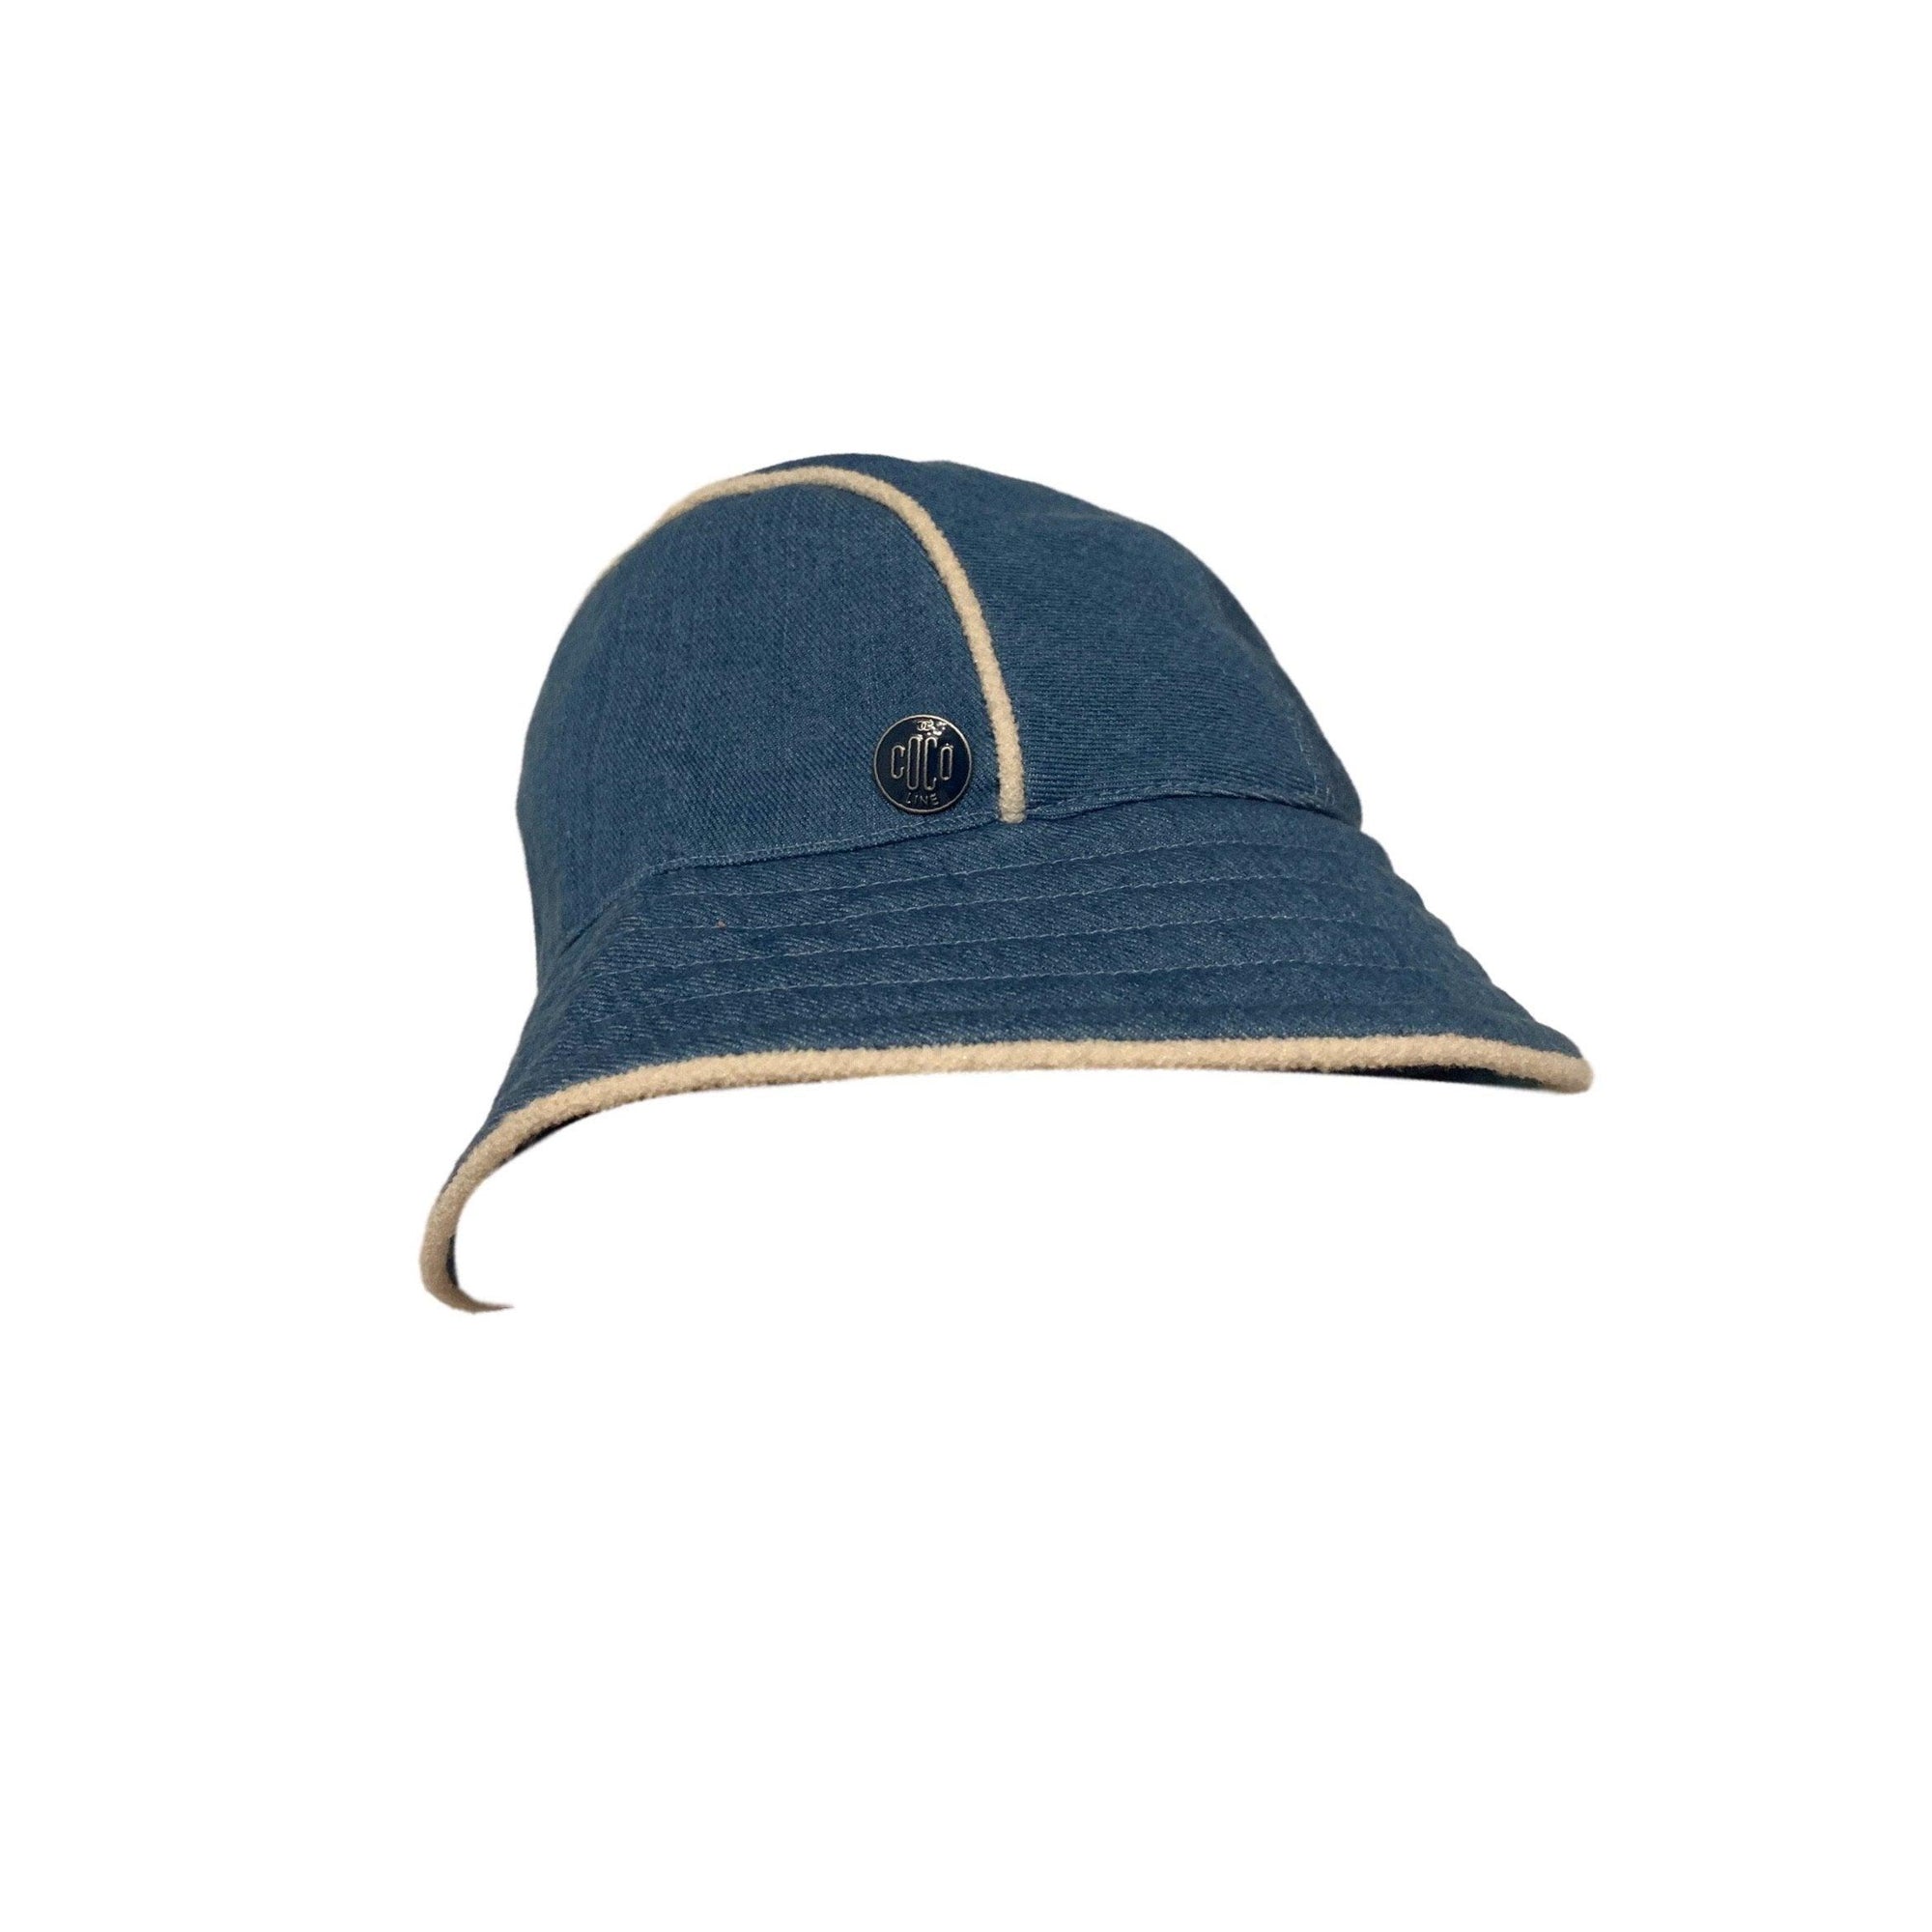 Chanel Denim Tweed Bucket Hat - Accessories